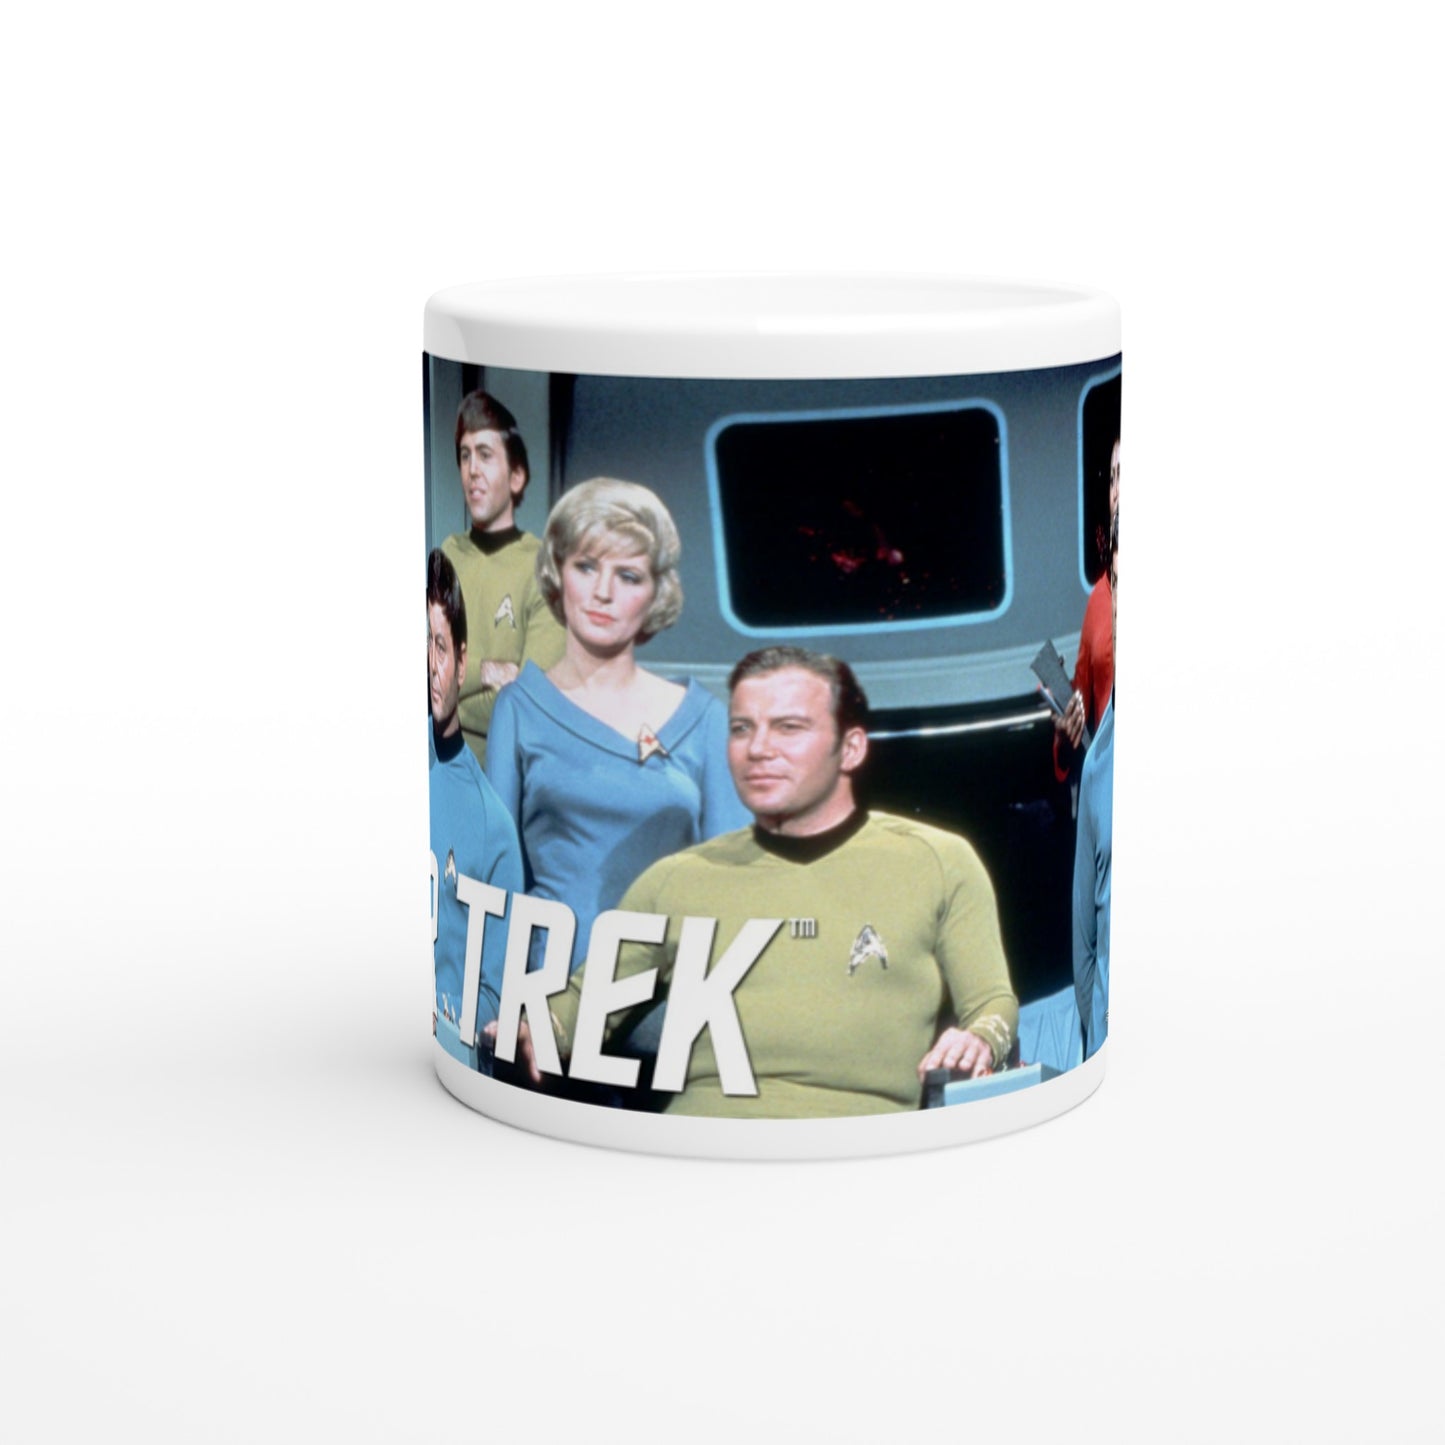 Official Star Trek Mug - The Crew - 330ml White Mug